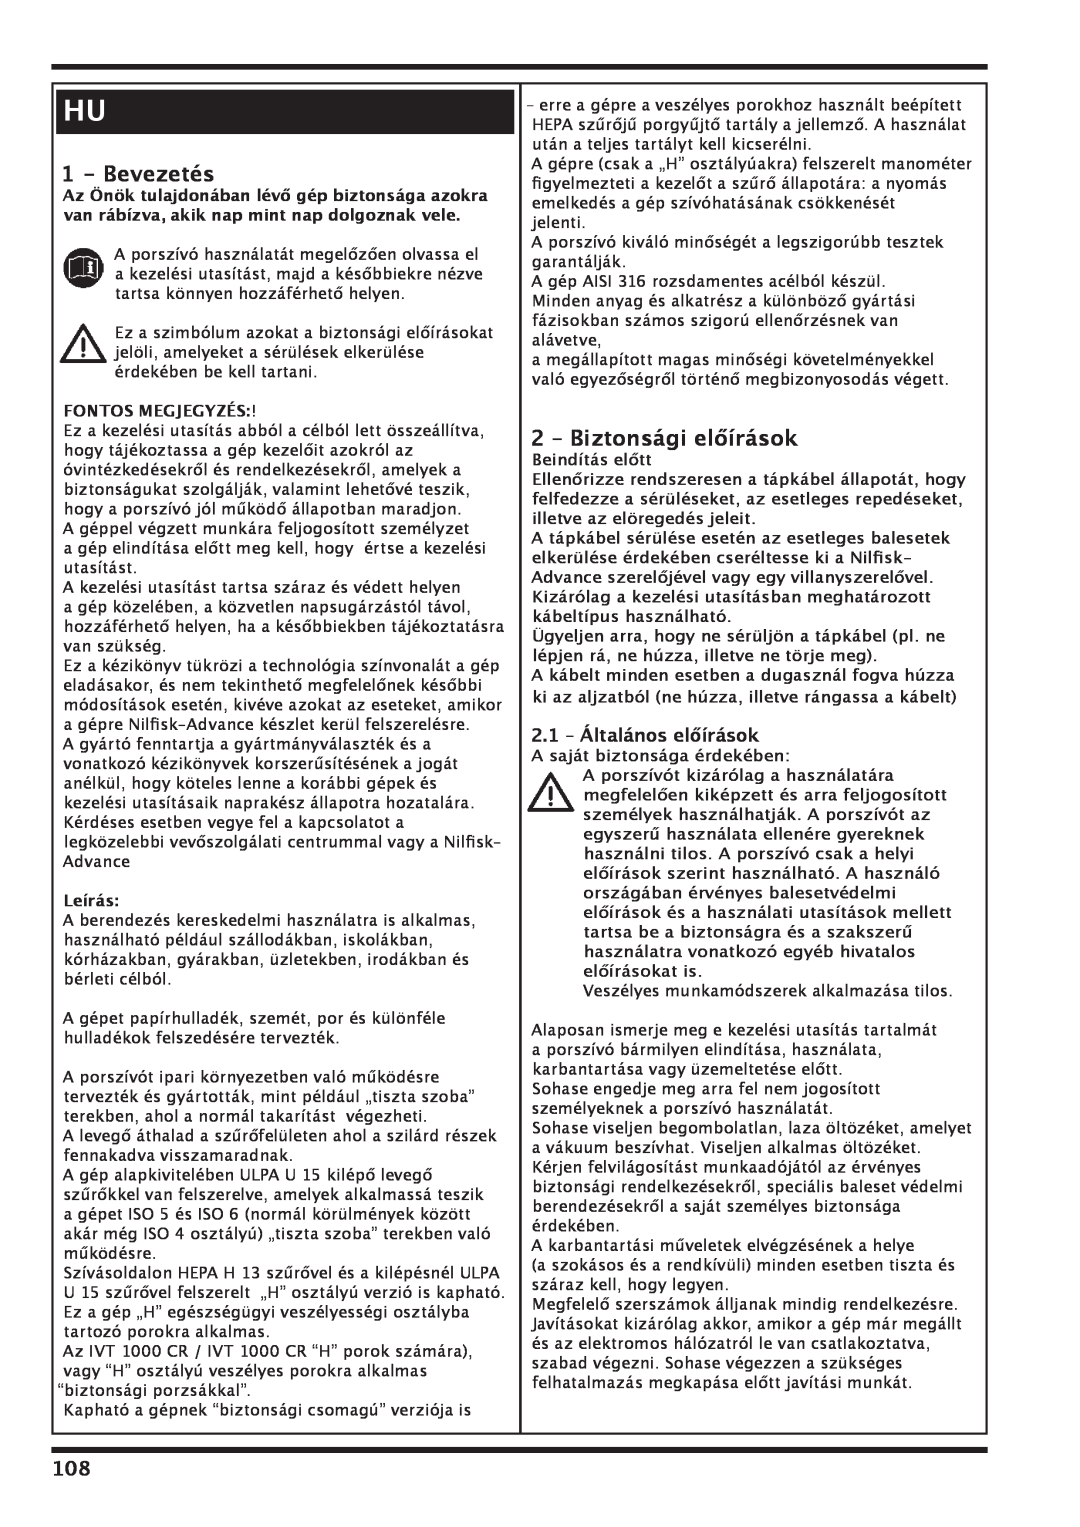 Nilfisk-Advance America IVT-1000CR Bevezetés, 2 – Biztonsági előírások, 2.1 – Általános előírások, Fontos Megjegyzés 